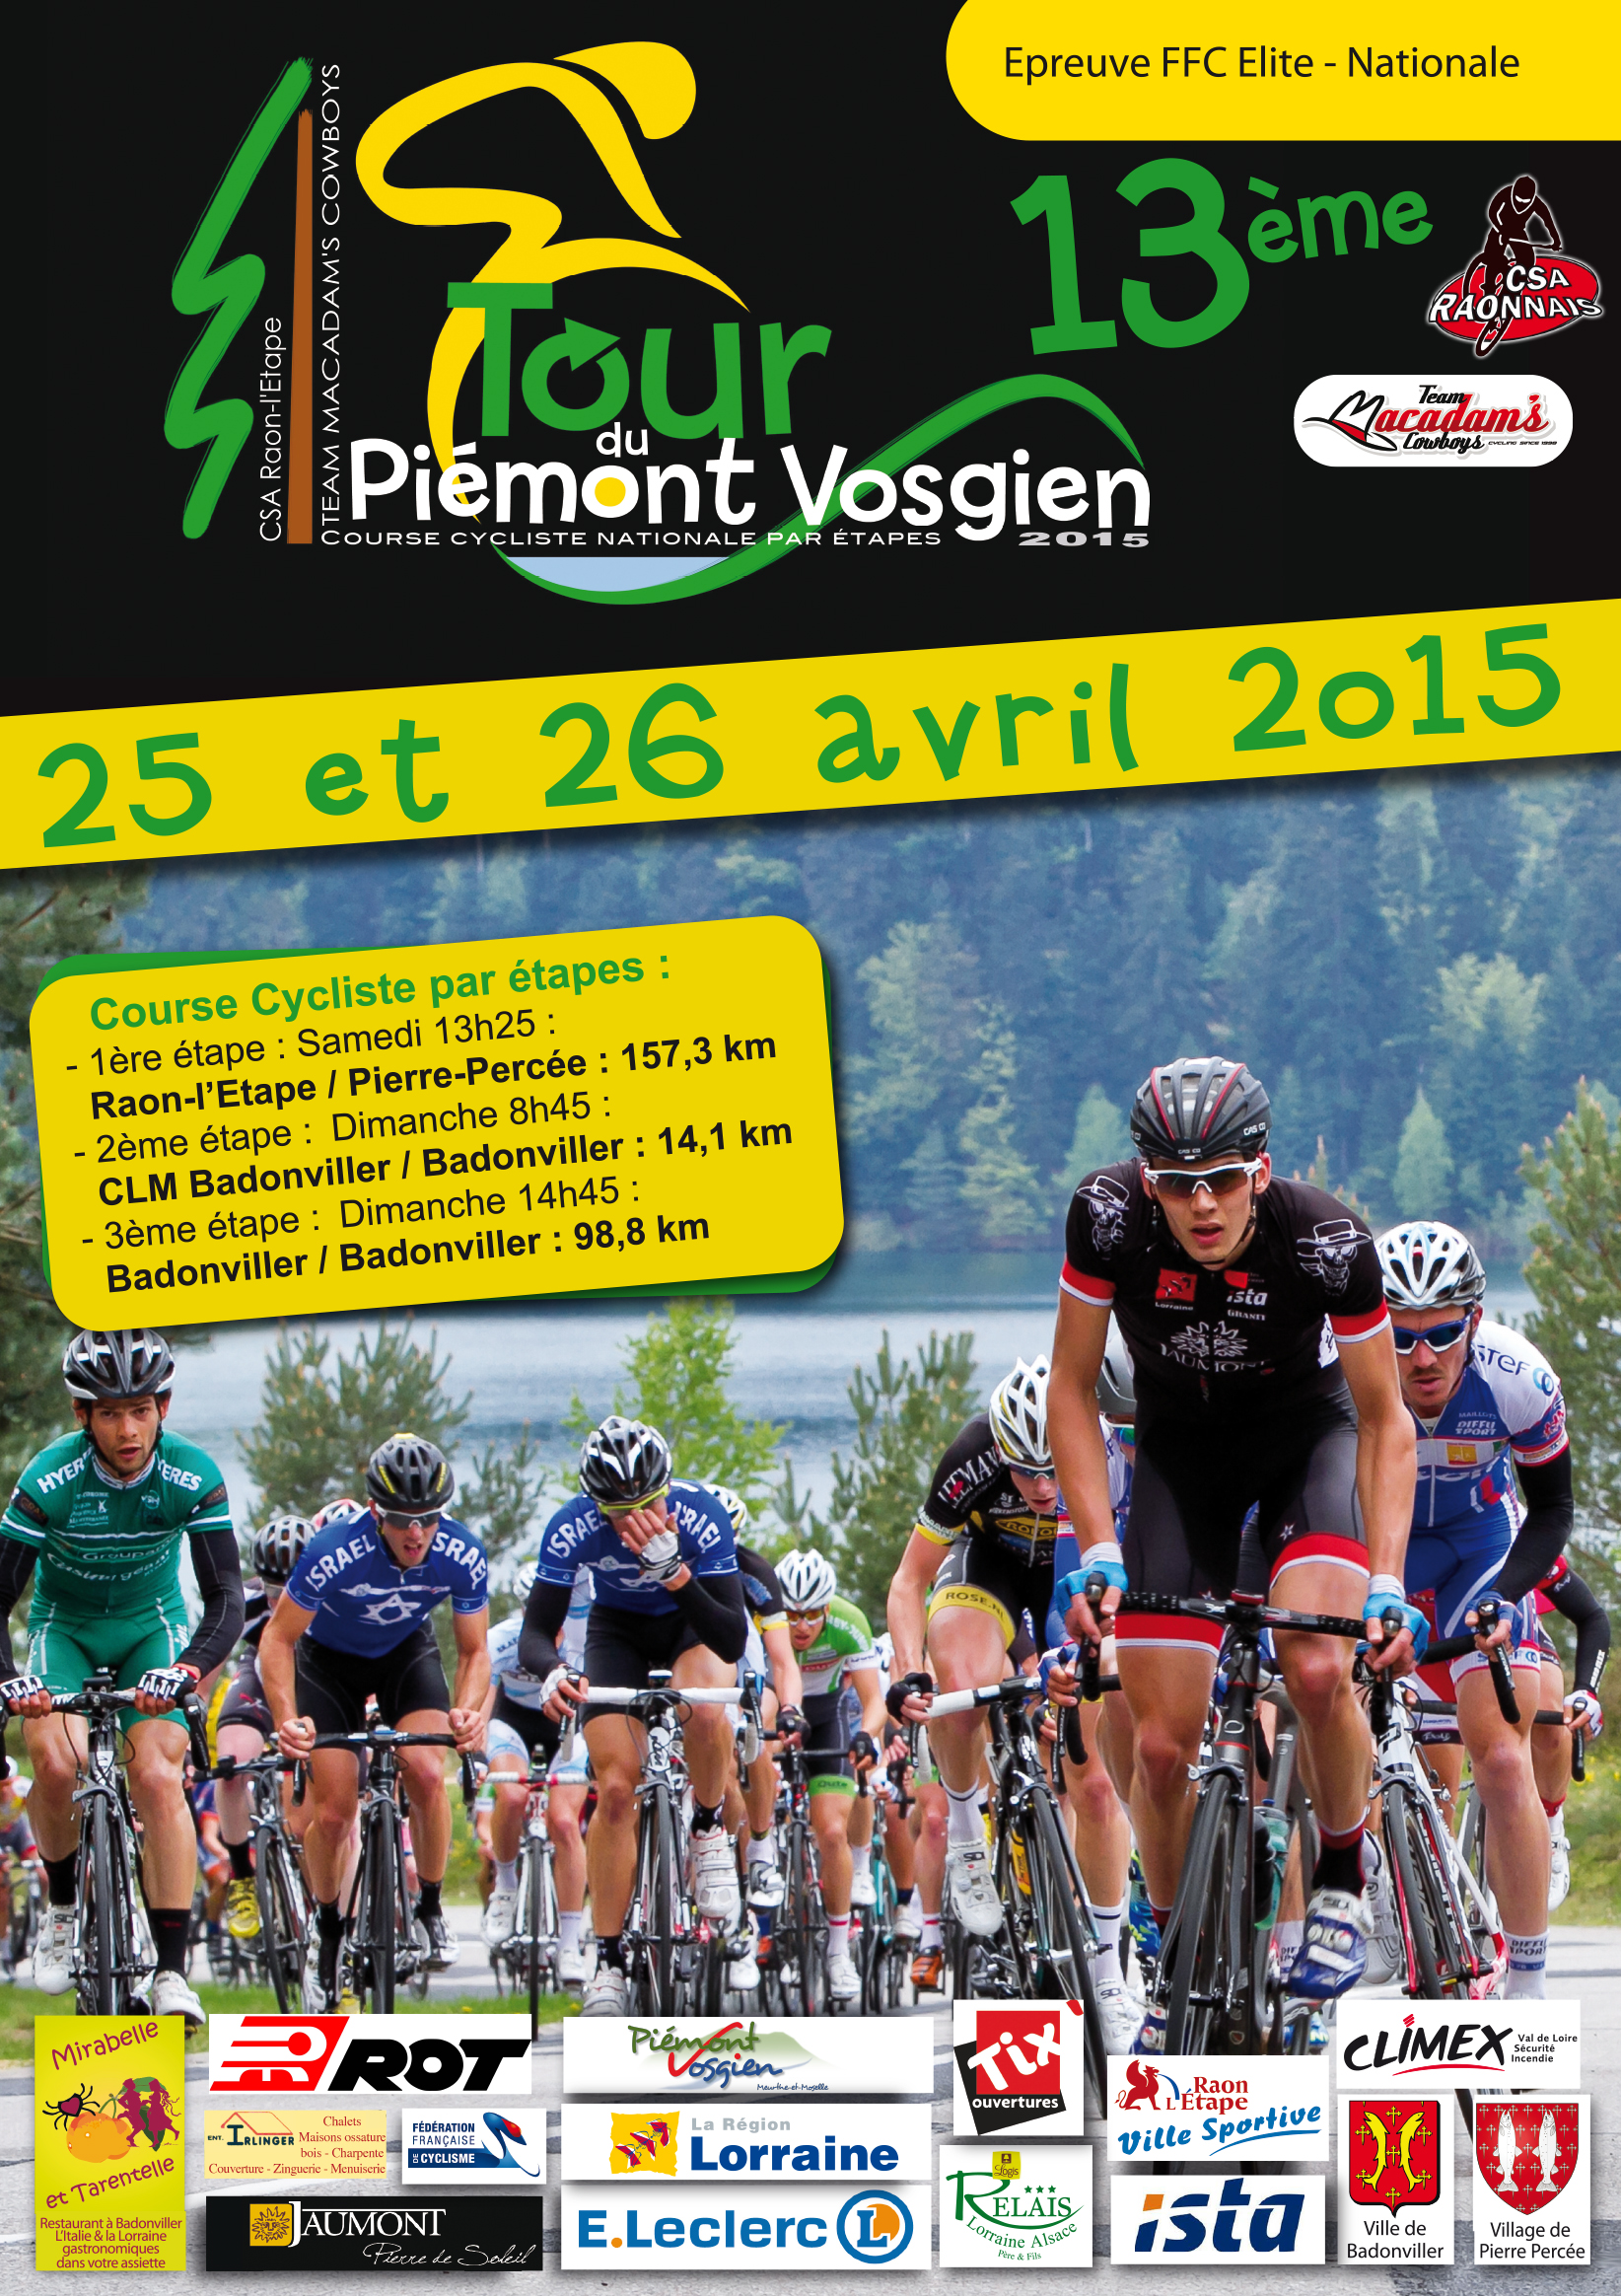 Voici les équipes retenues pour le Tour du Piémont Vosgien 2015 (Elite Nationale) qui aura lieu les 25 et 26 Avril: